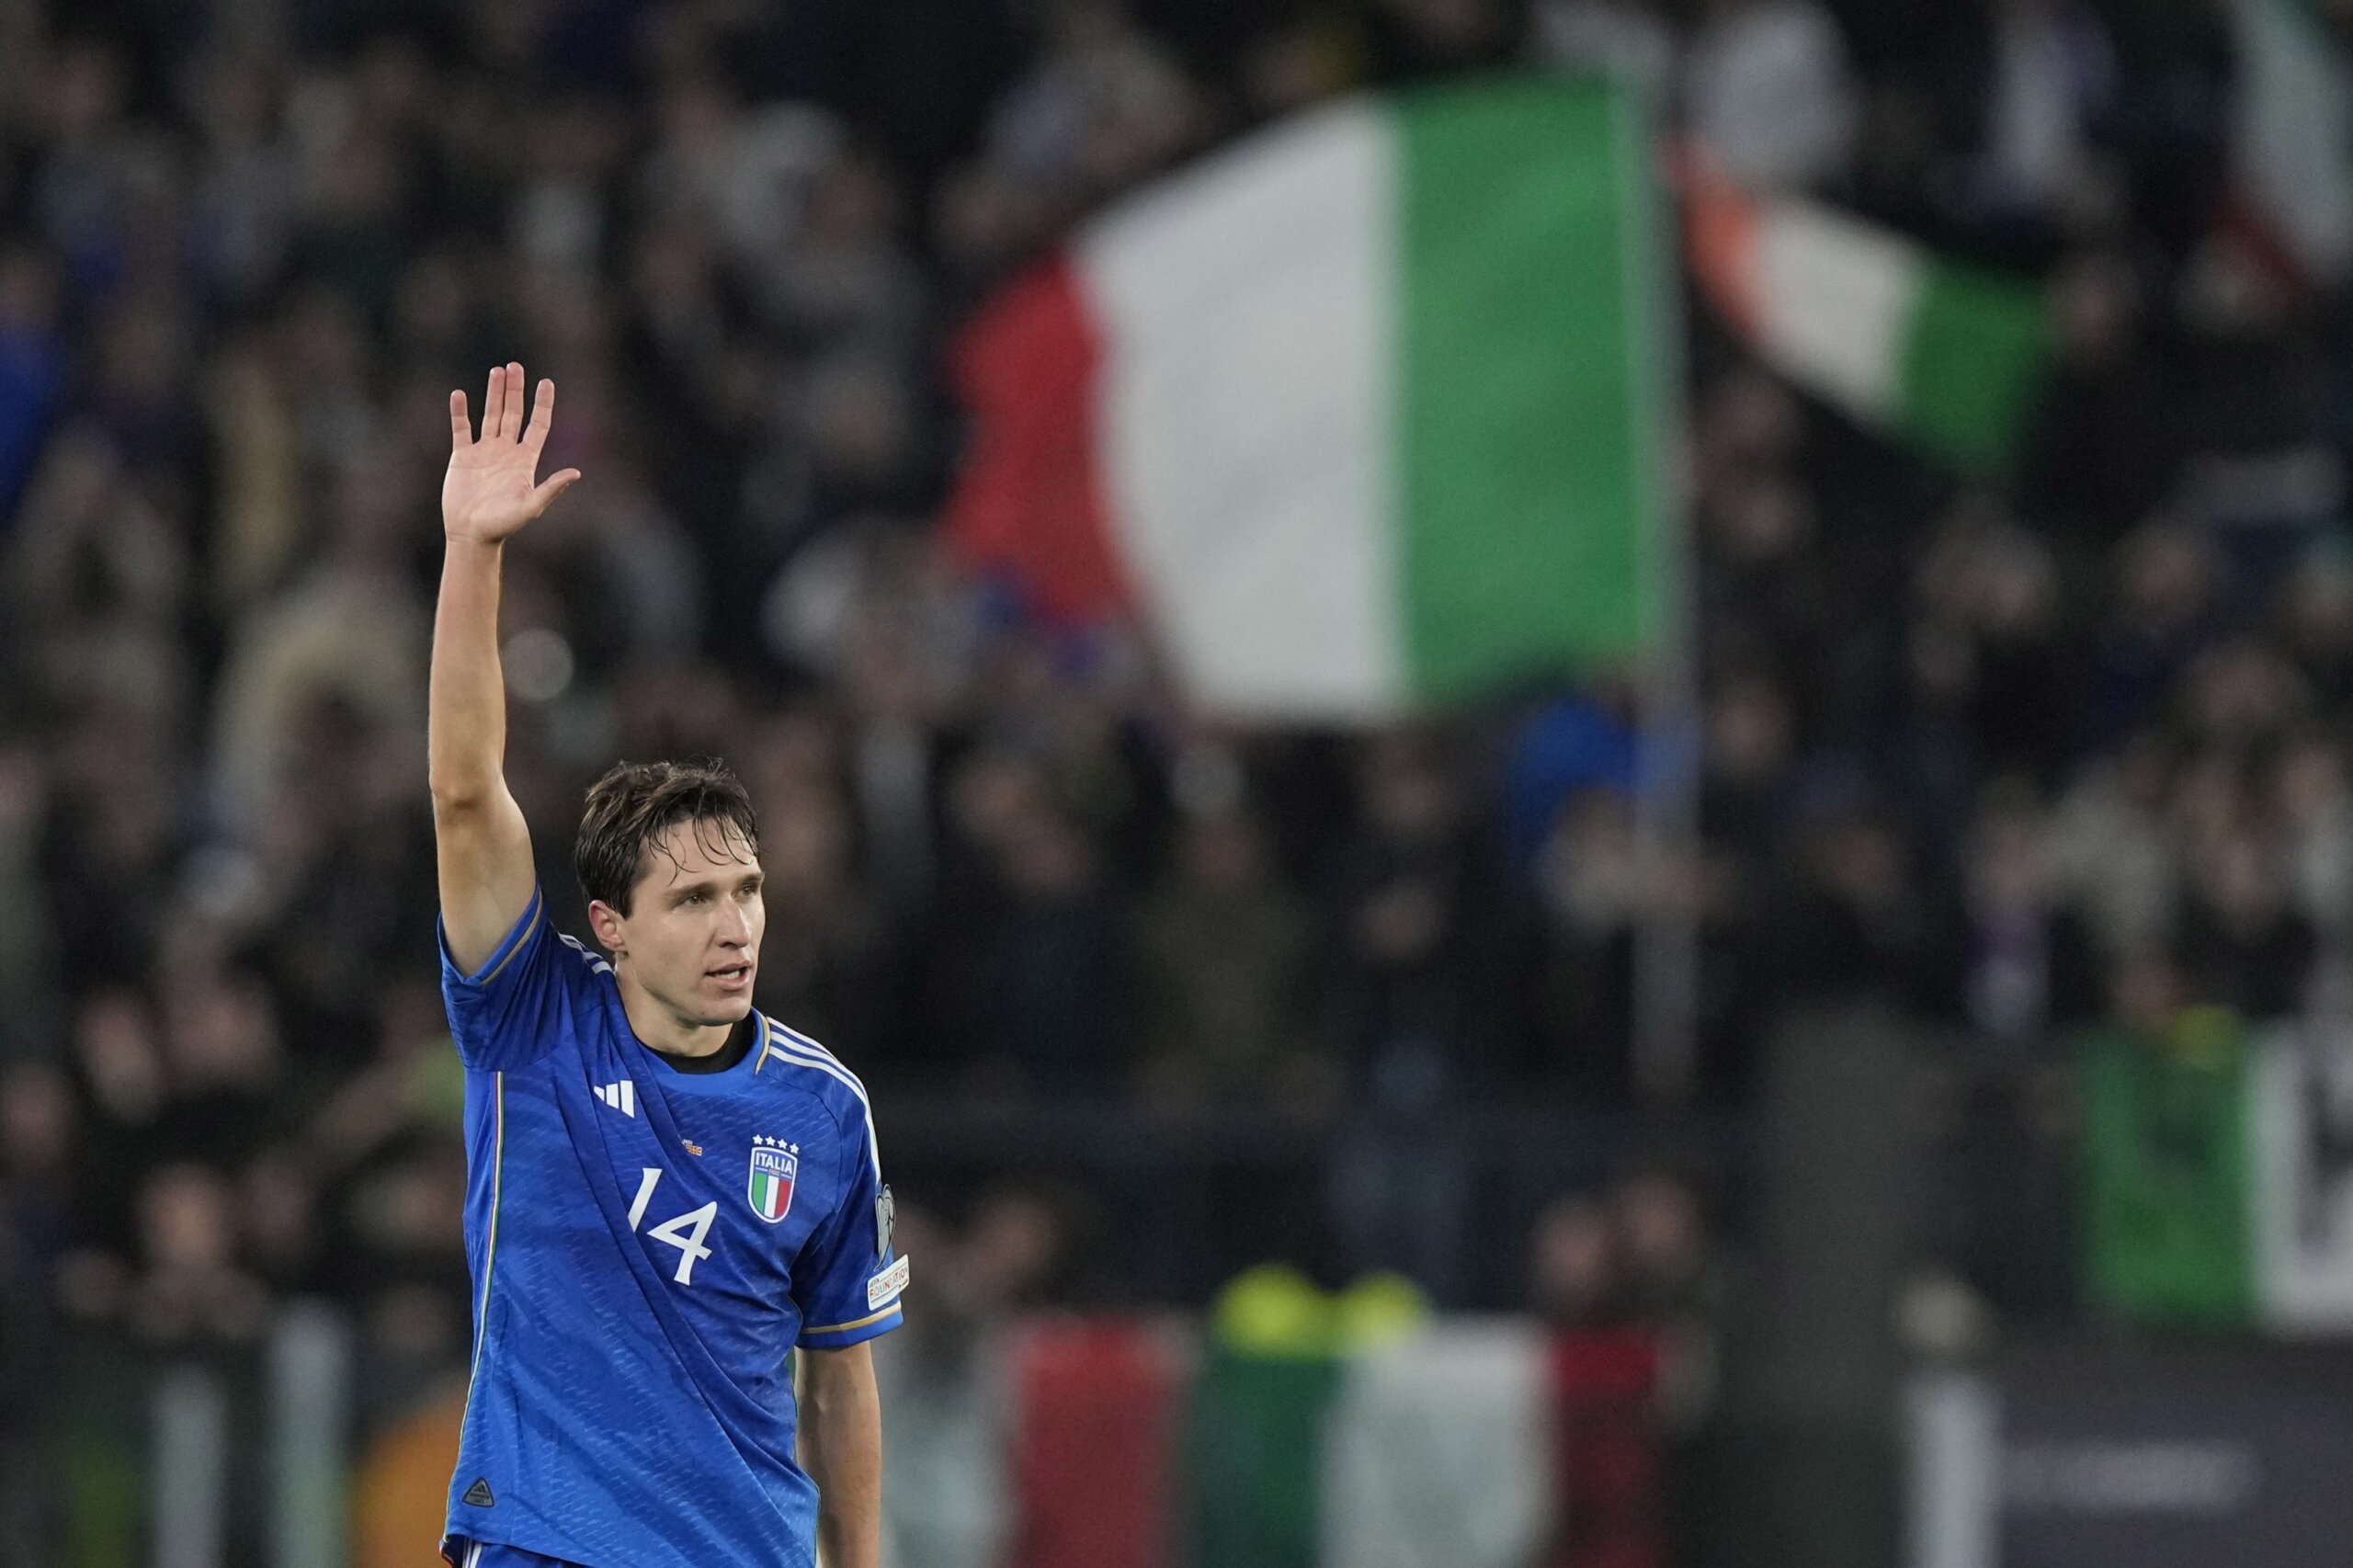 Dánsko a Albánie se kvalifikují na Euro 2024. Itálie dosáhla klíčového vítězství, aby se kvalifikovala do zúčtování proti Ukrajině